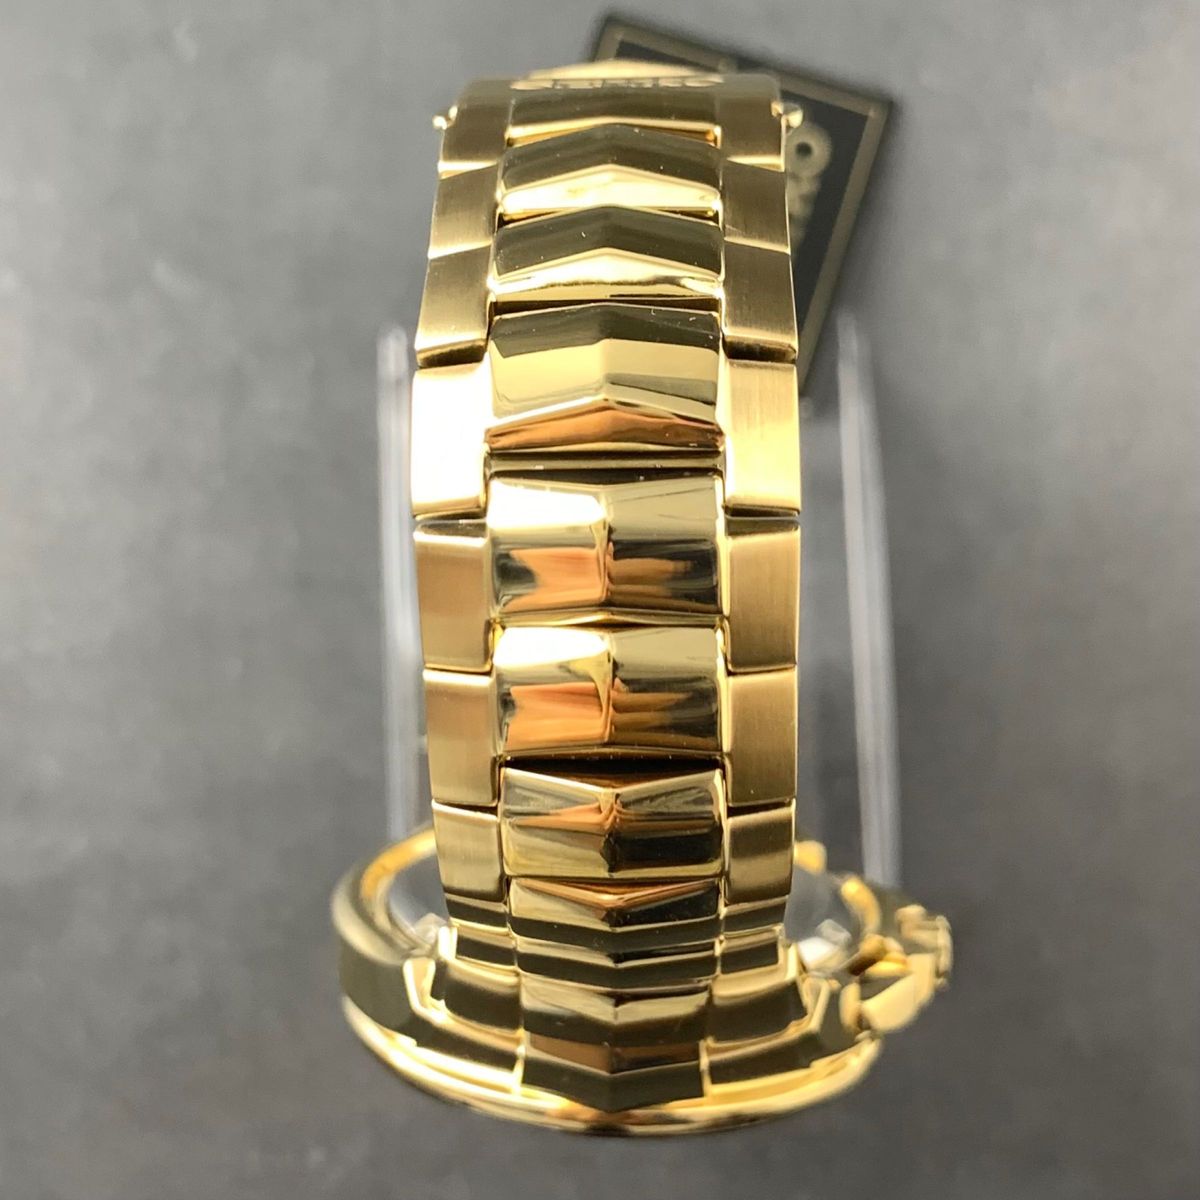 【新品訳あり】セイコー上級コーチュラ SSC700 パーペチュアル クロノグラフ ソーラー SEIKO メンズ腕時計 ゴールド